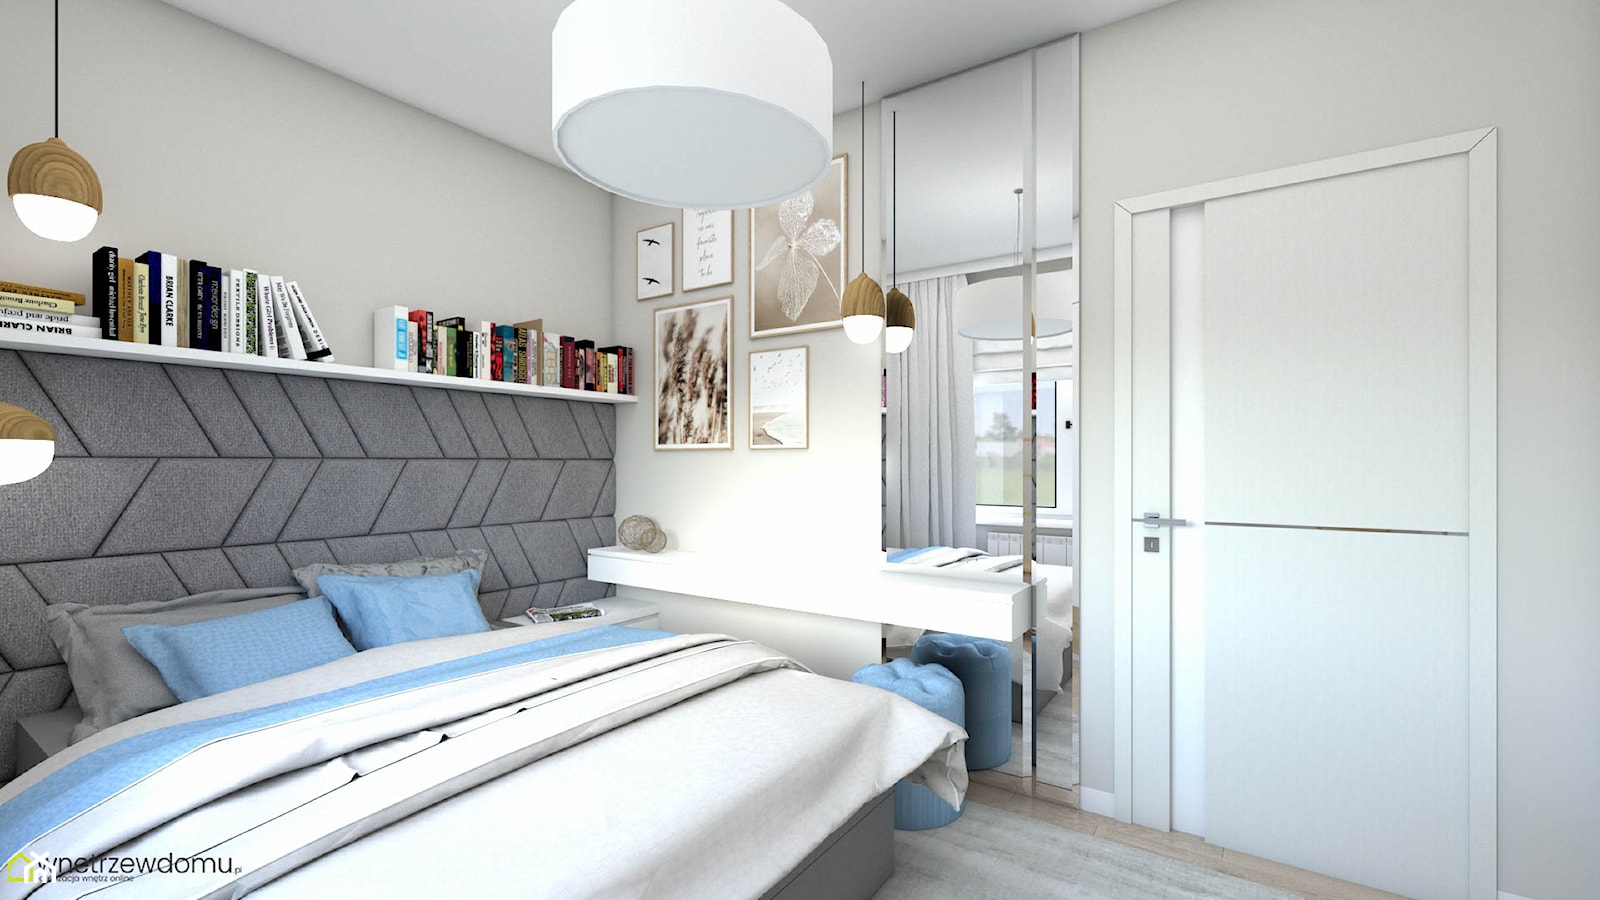 Hotelowa sypialnia z tapicerowaną ścianą - zdjęcie od wnetrzewdomu - Homebook